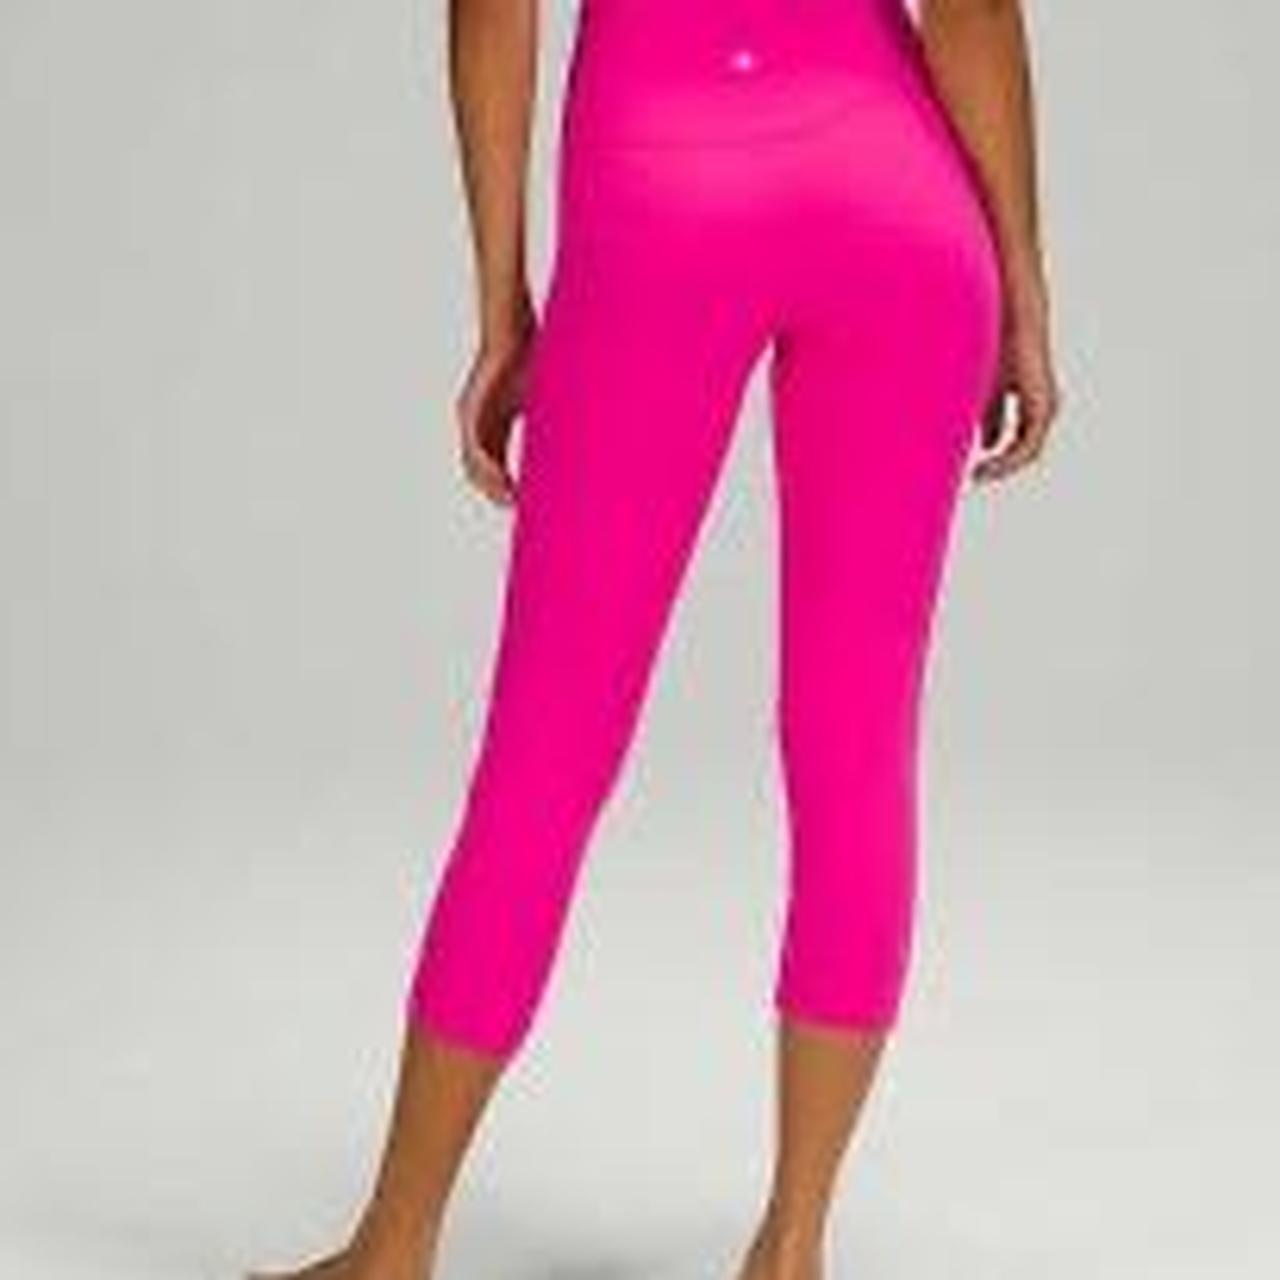 sonic pink lululemon align leggings - size 2 - Depop